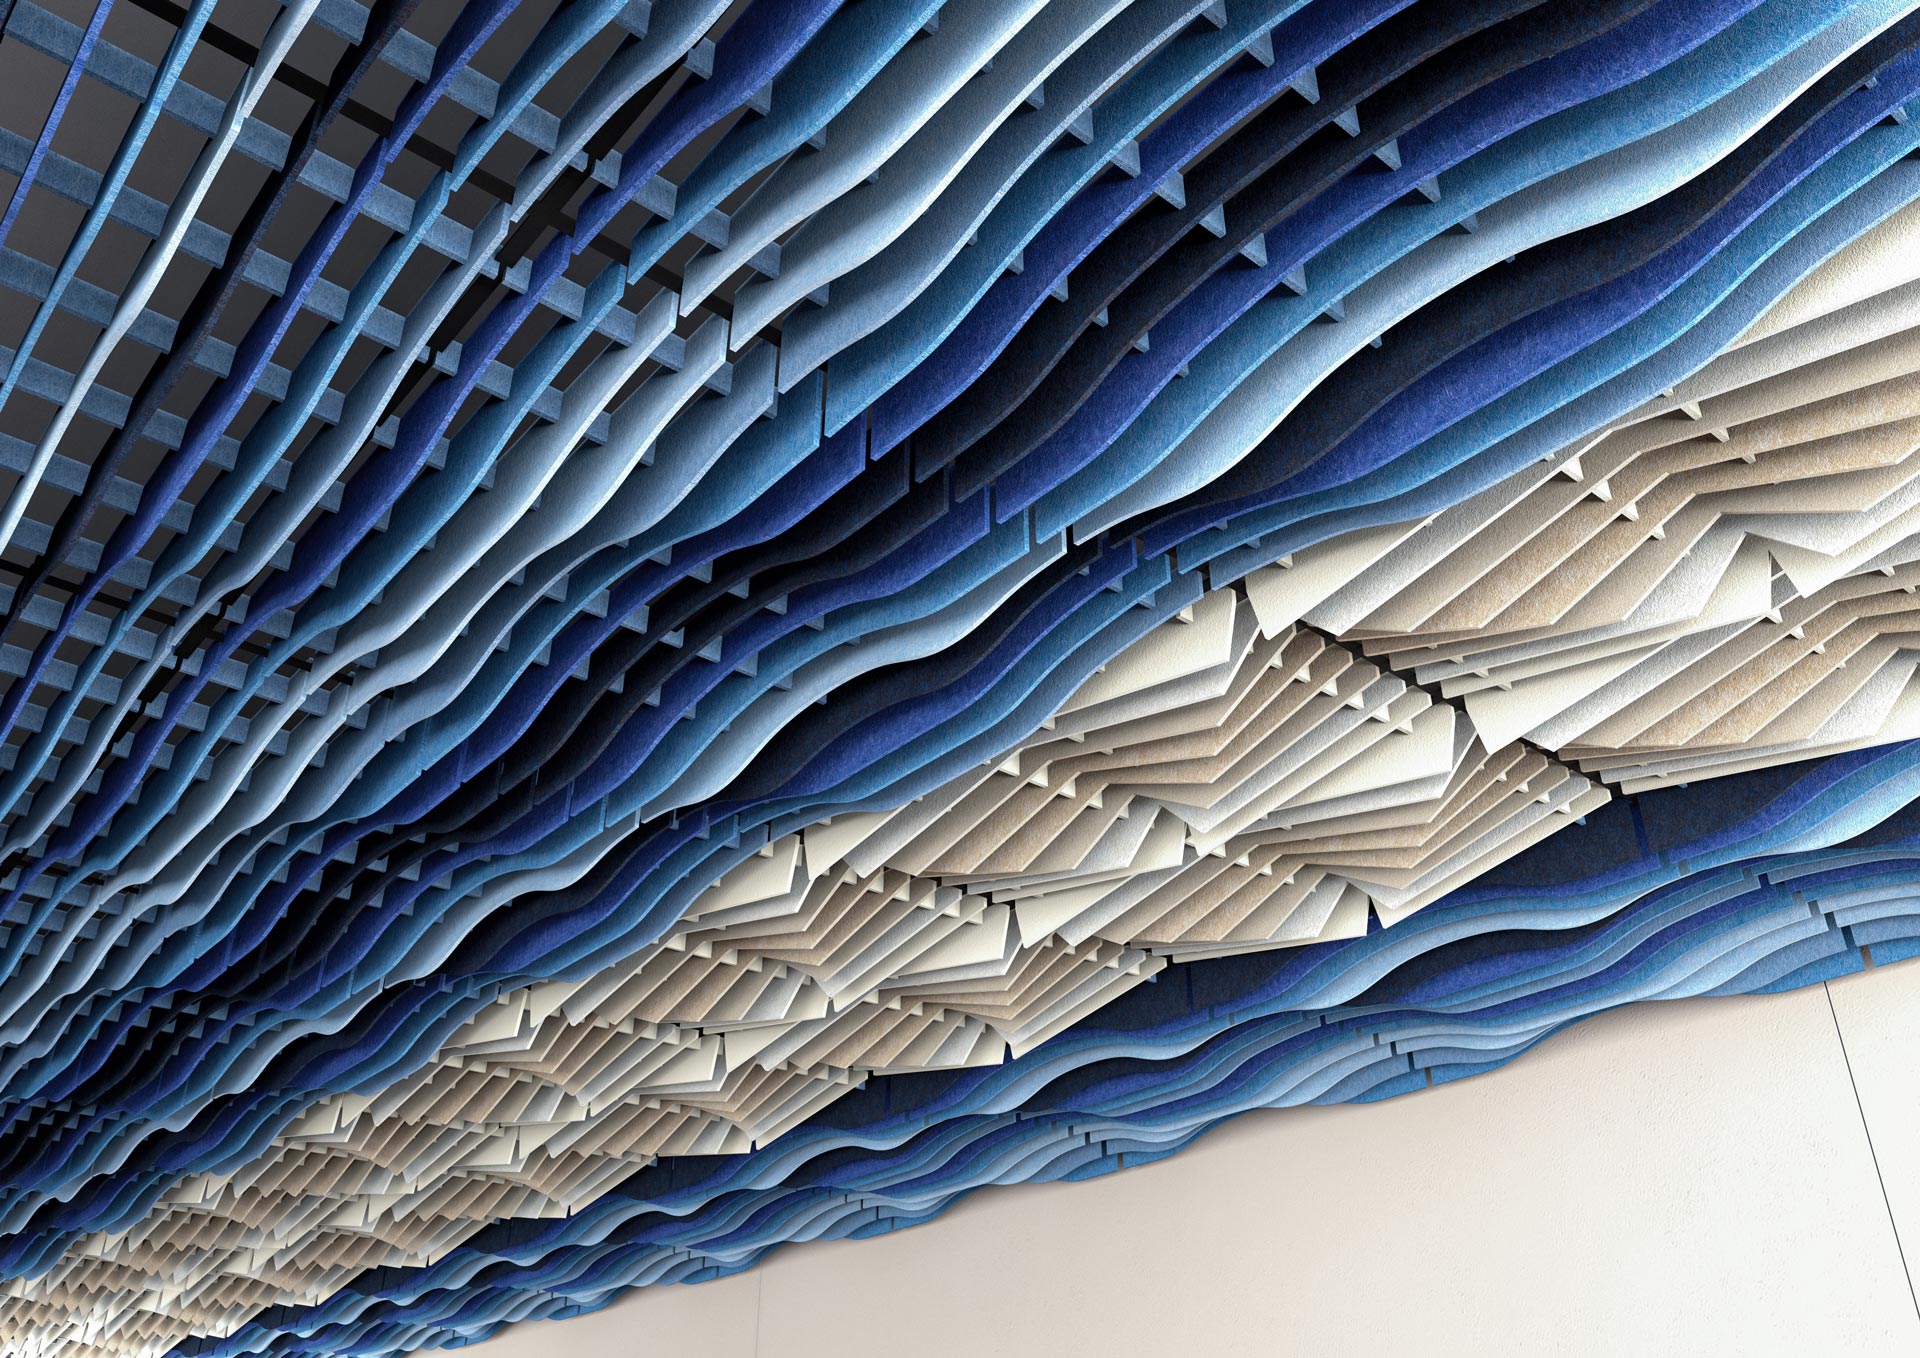 Widok pod kątem na rastrowy sufit dźwiękochłonny 3d gradient w odcieniach niebieskiego